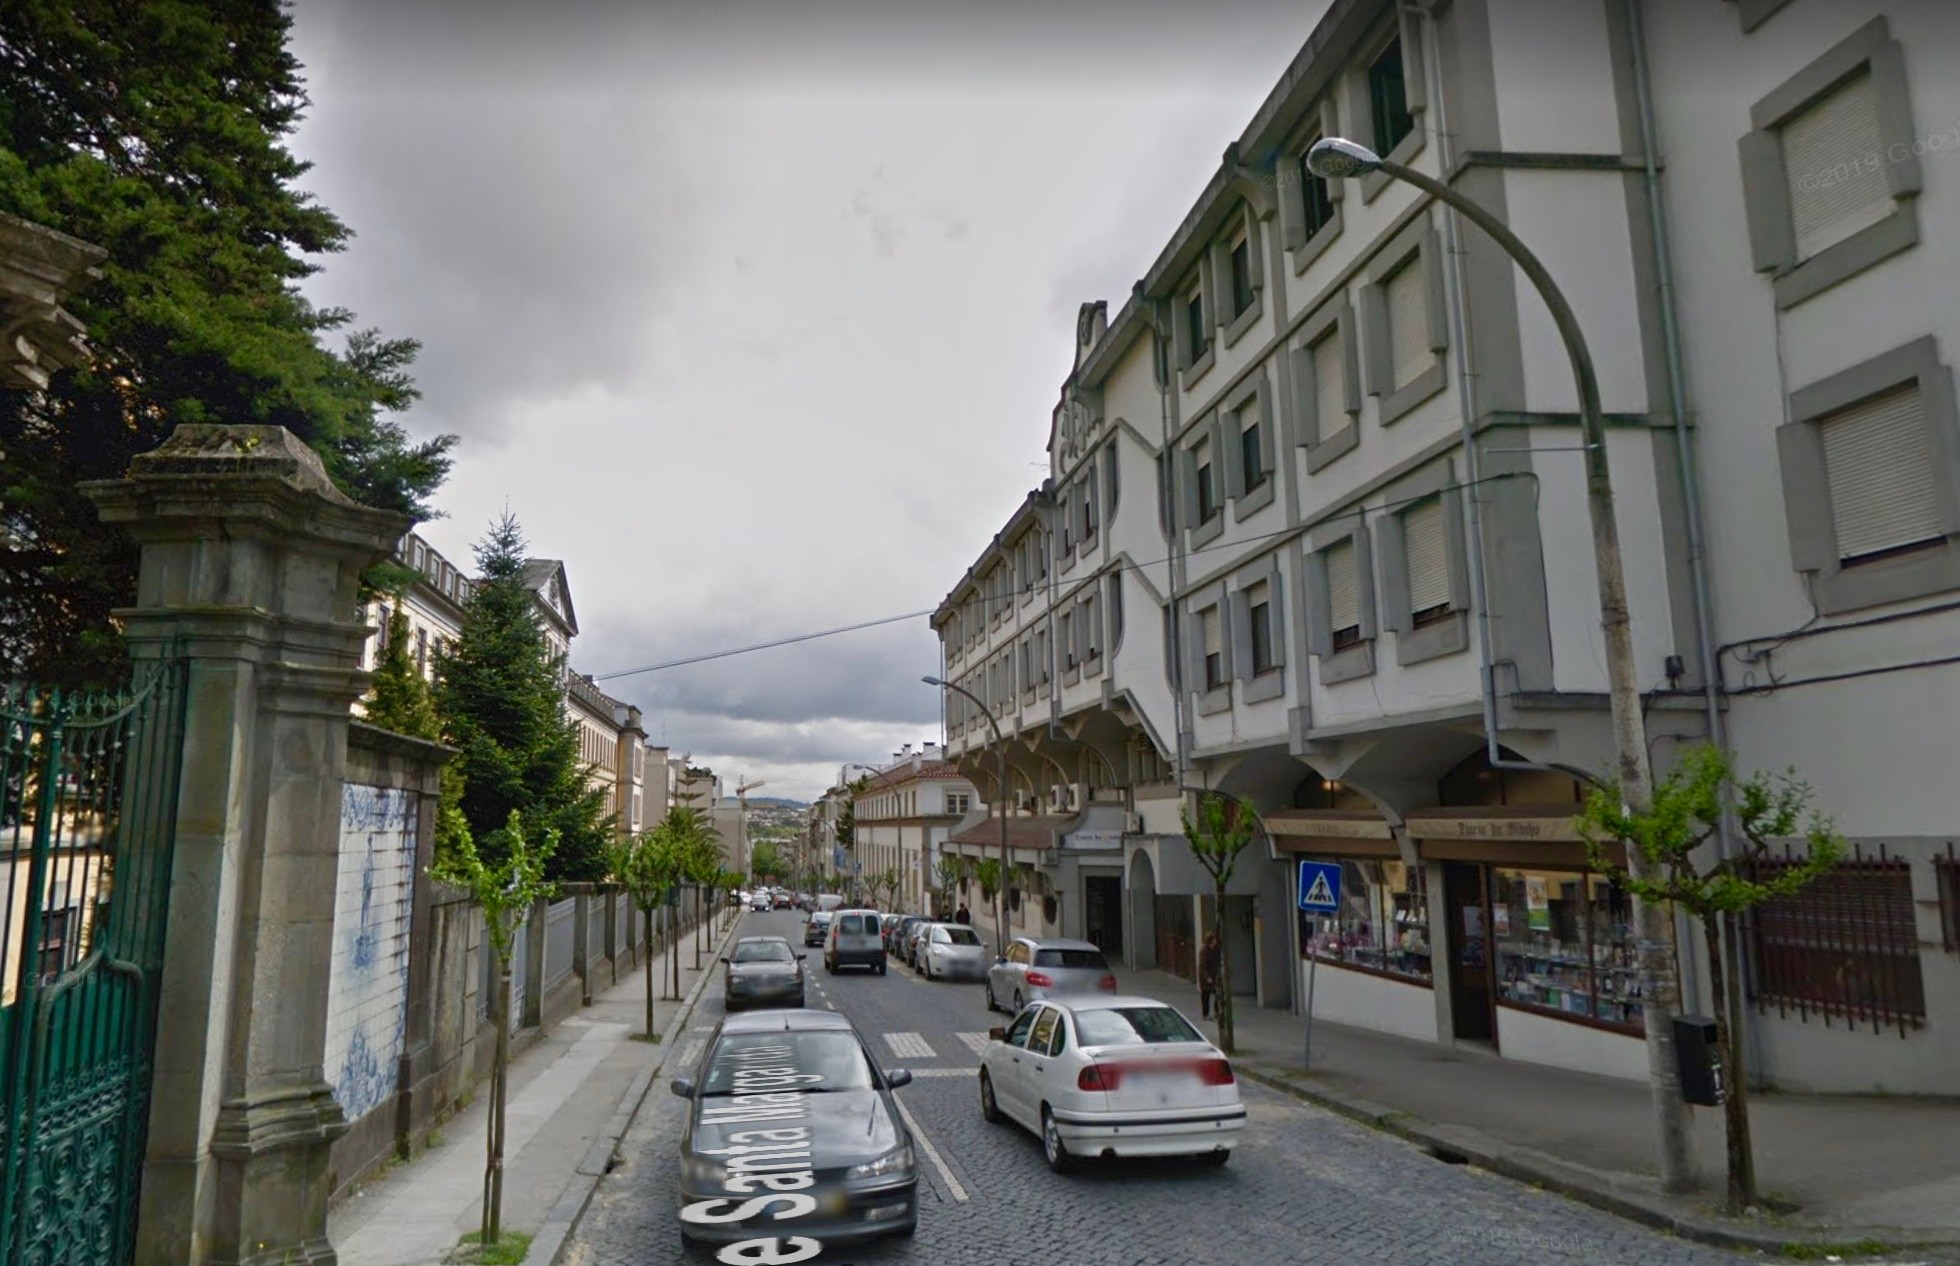 Instalação de grua vai cortar rua de Santa Margarida em Braga